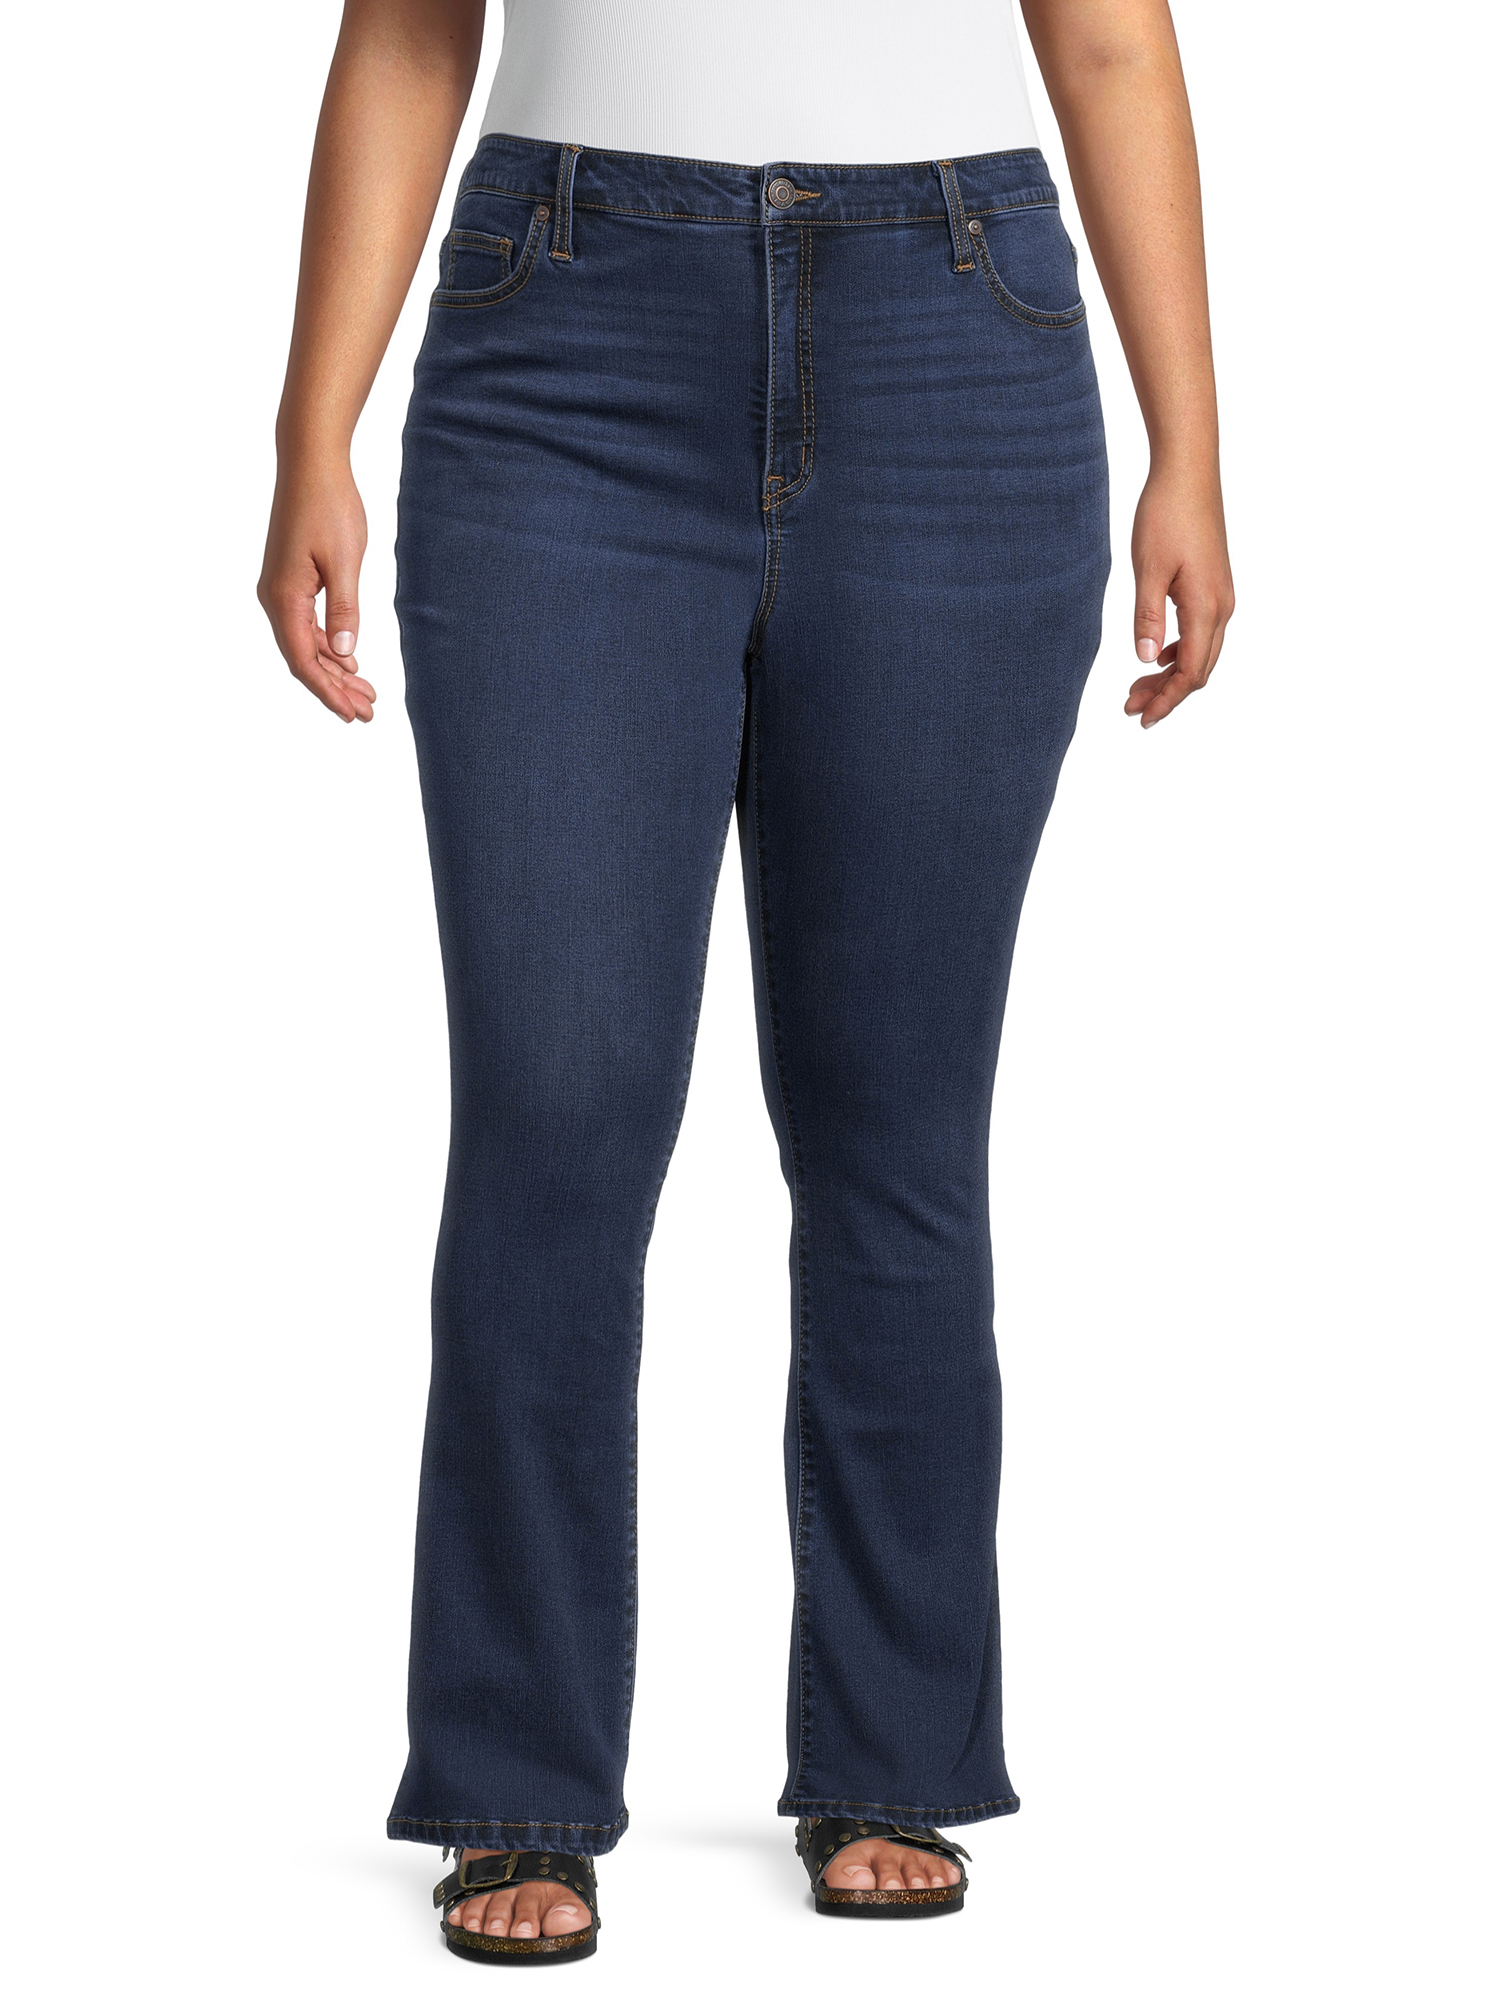 Terra & Sky Women's Plus Size High Waist Bootcut Jeans - Walmart.com